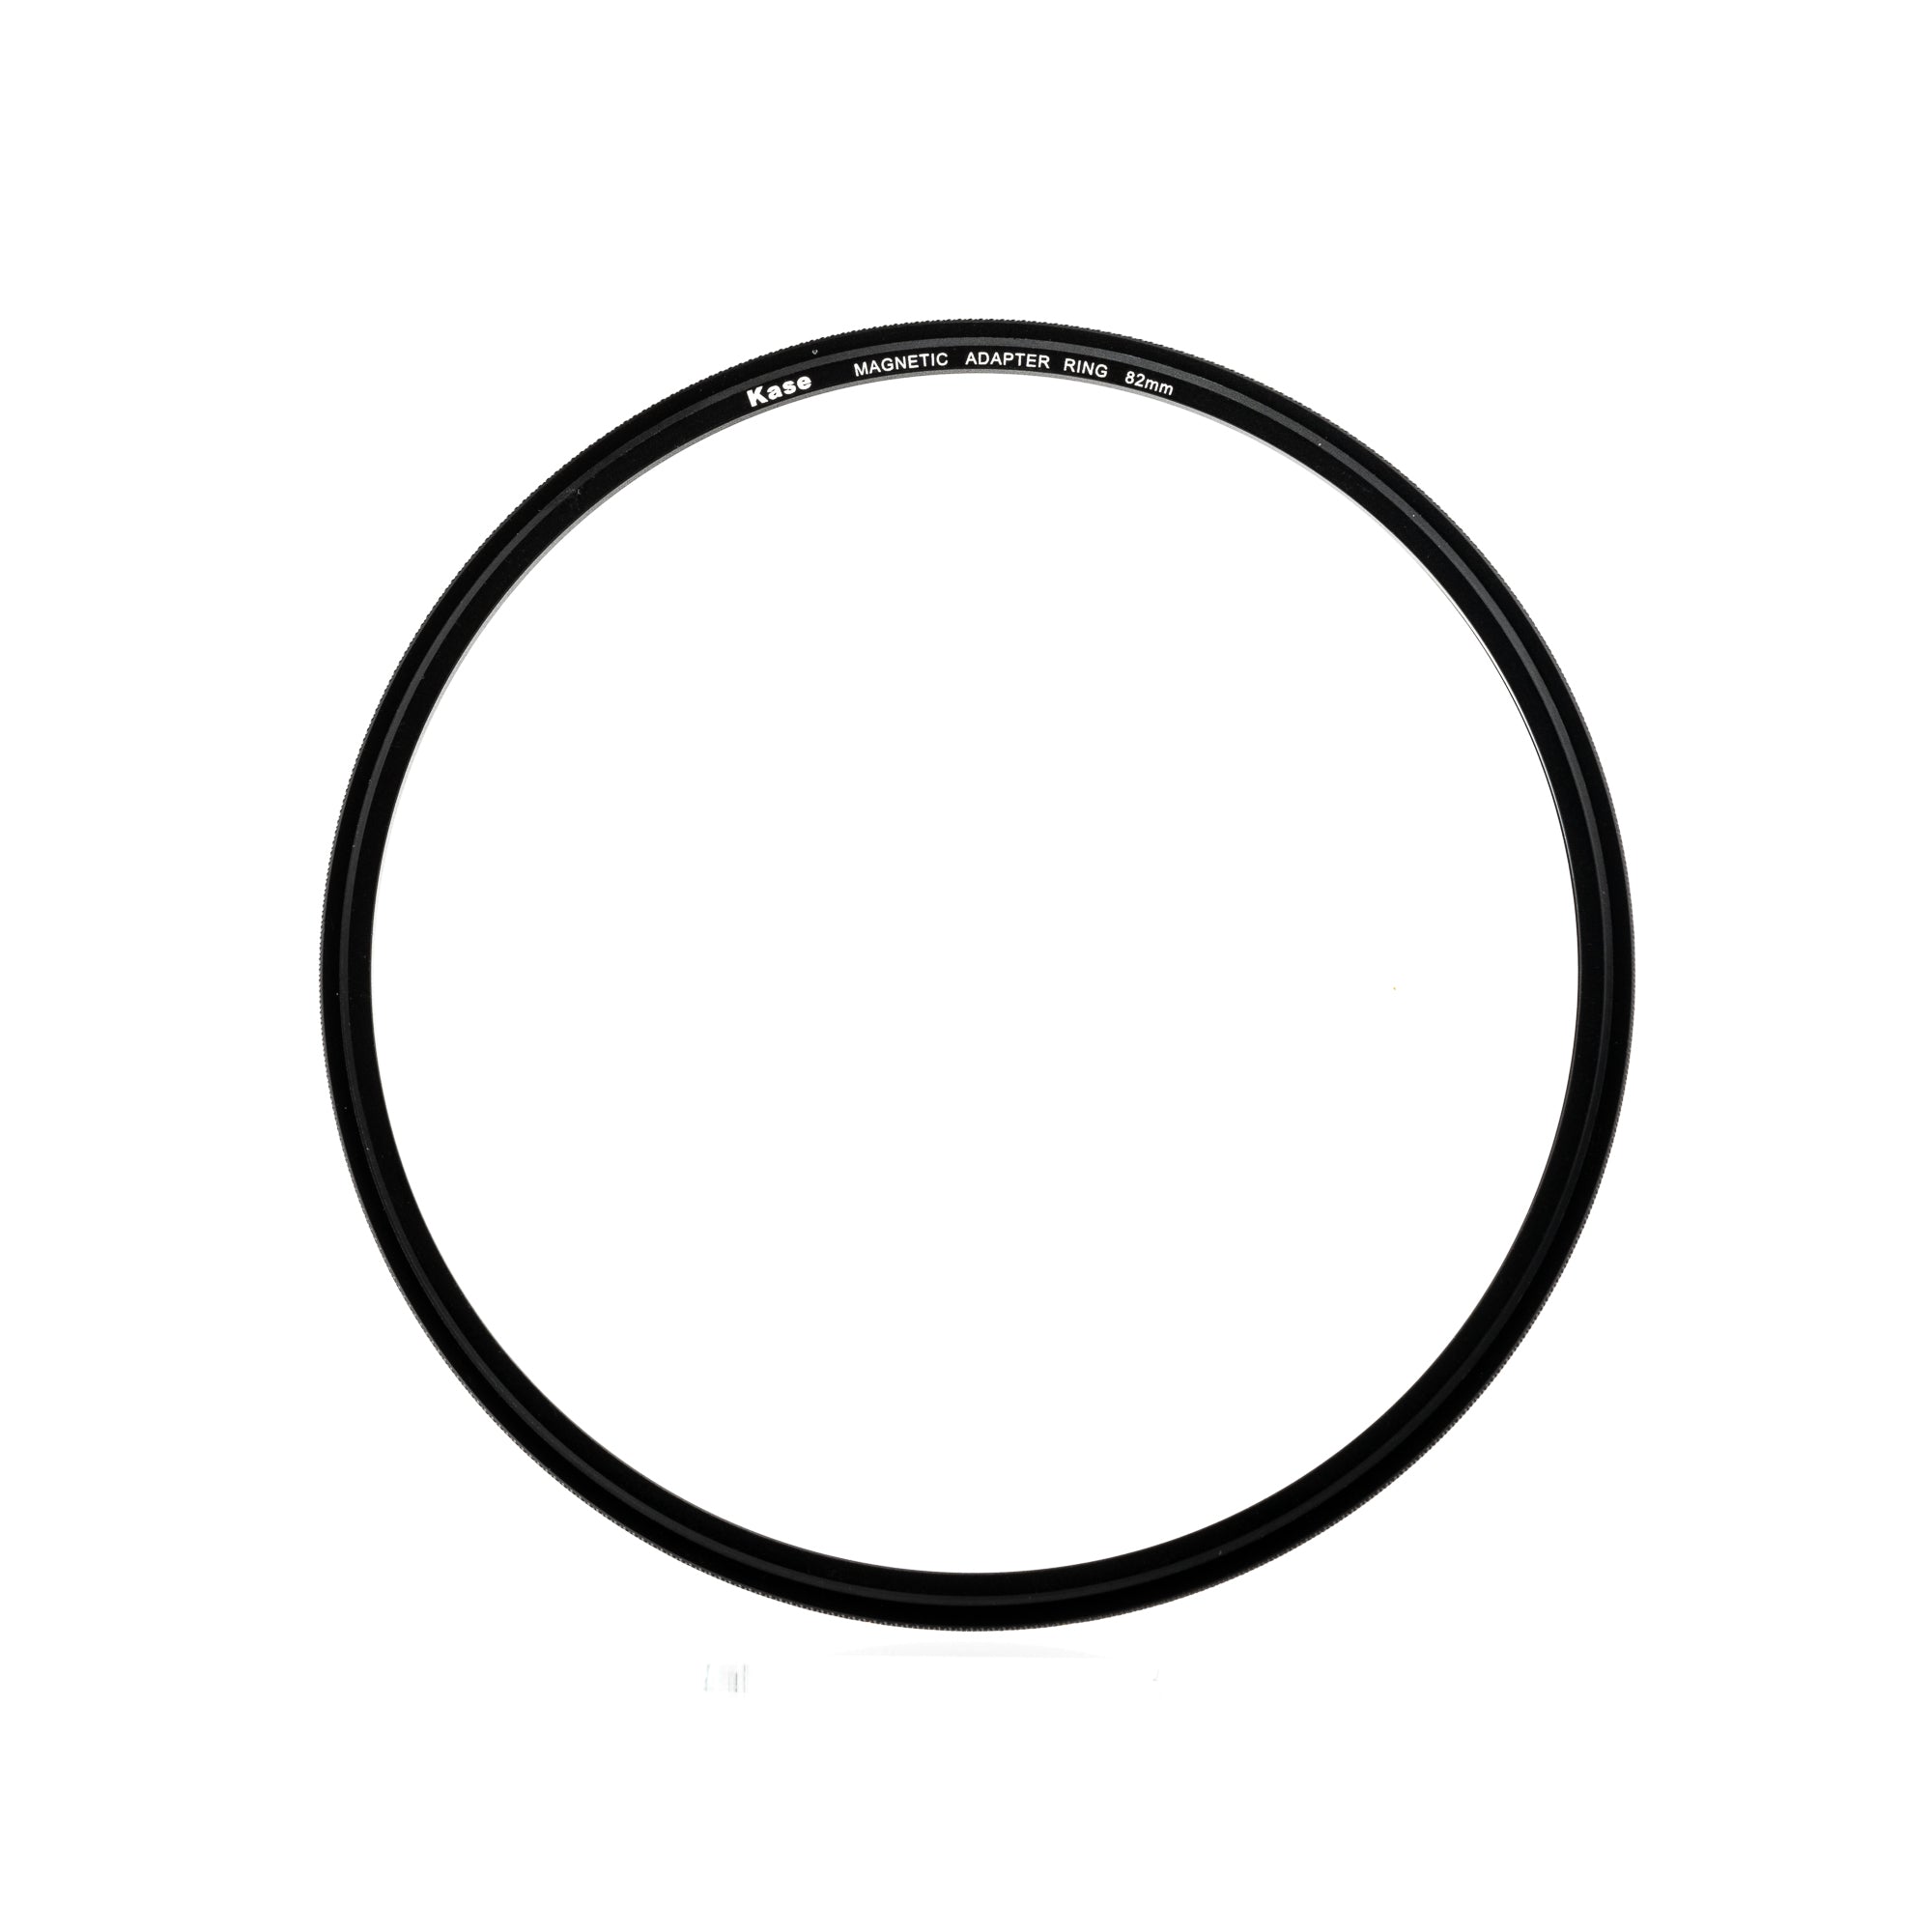 Kase magnetic circular adaptor ring 82mm